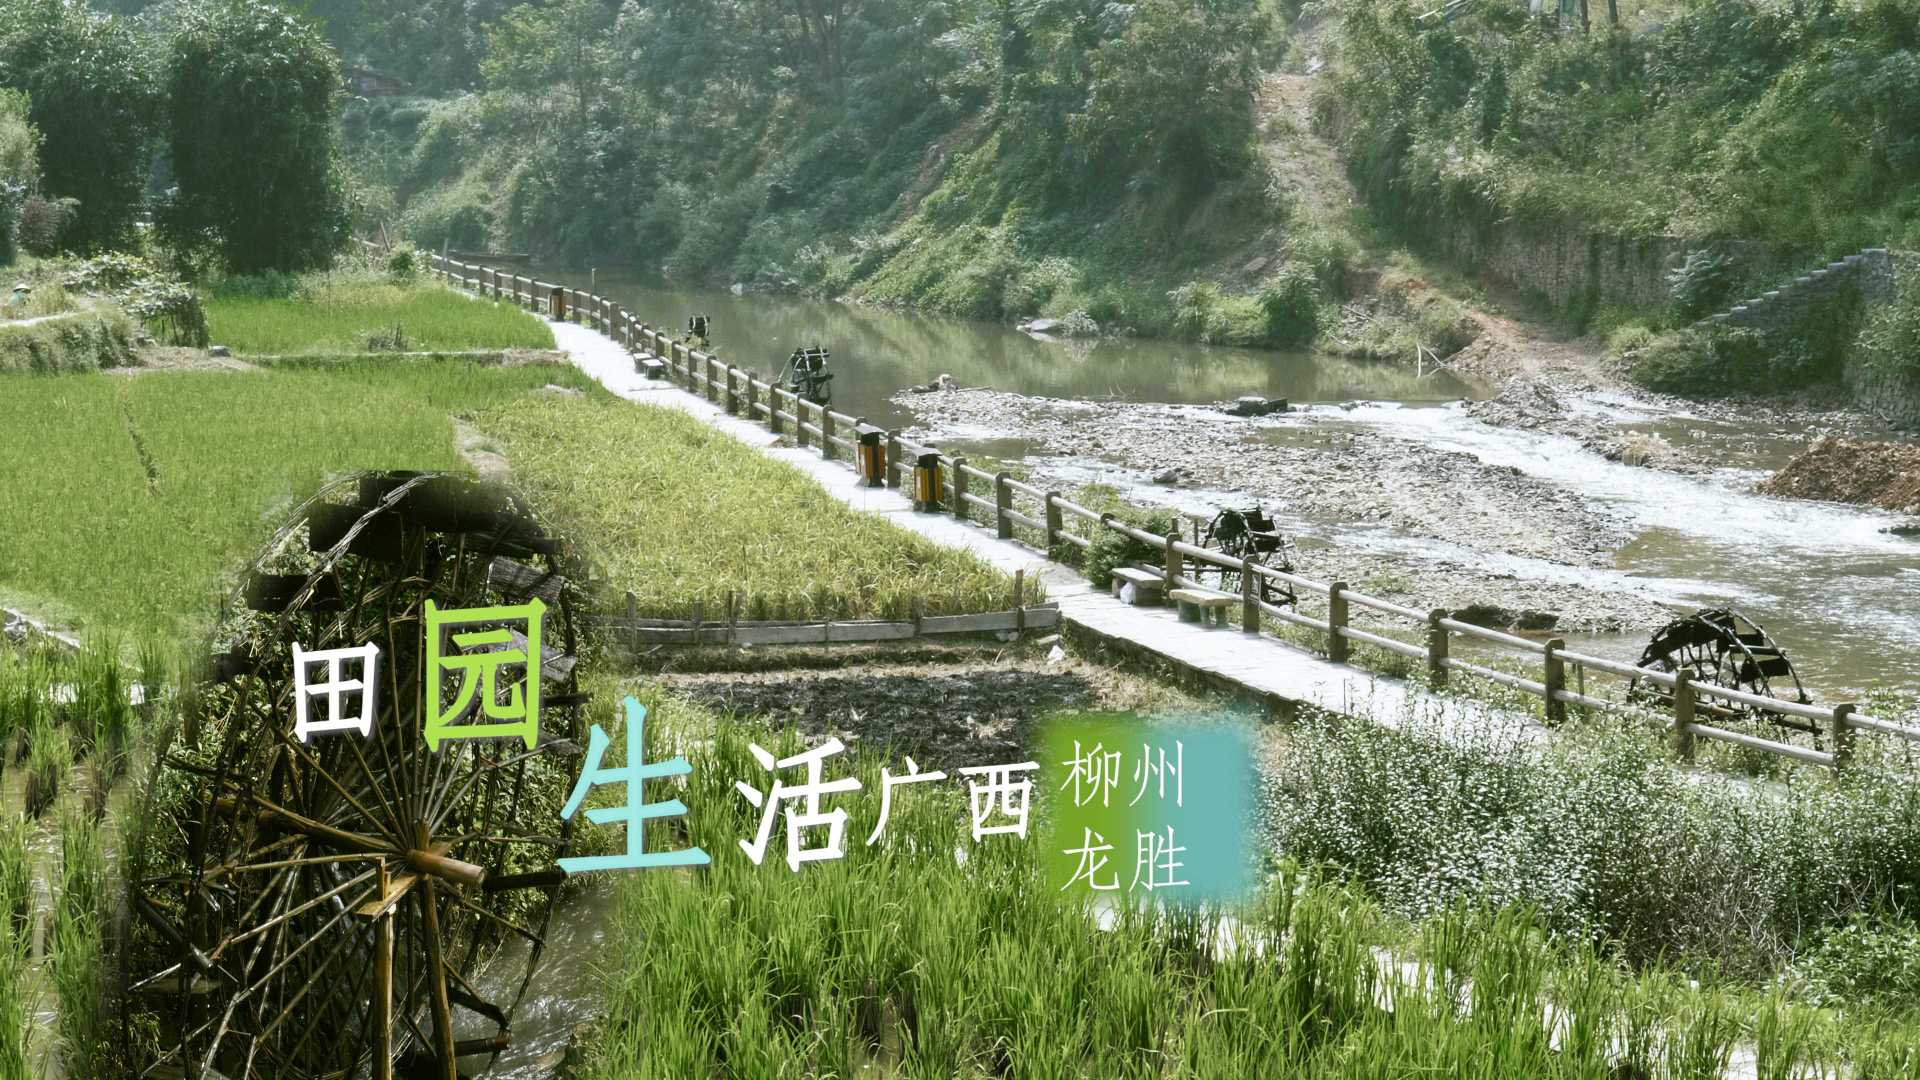 【旅行短片】在田野与水车处寻觅生活|广西|美丽乡村|航拍